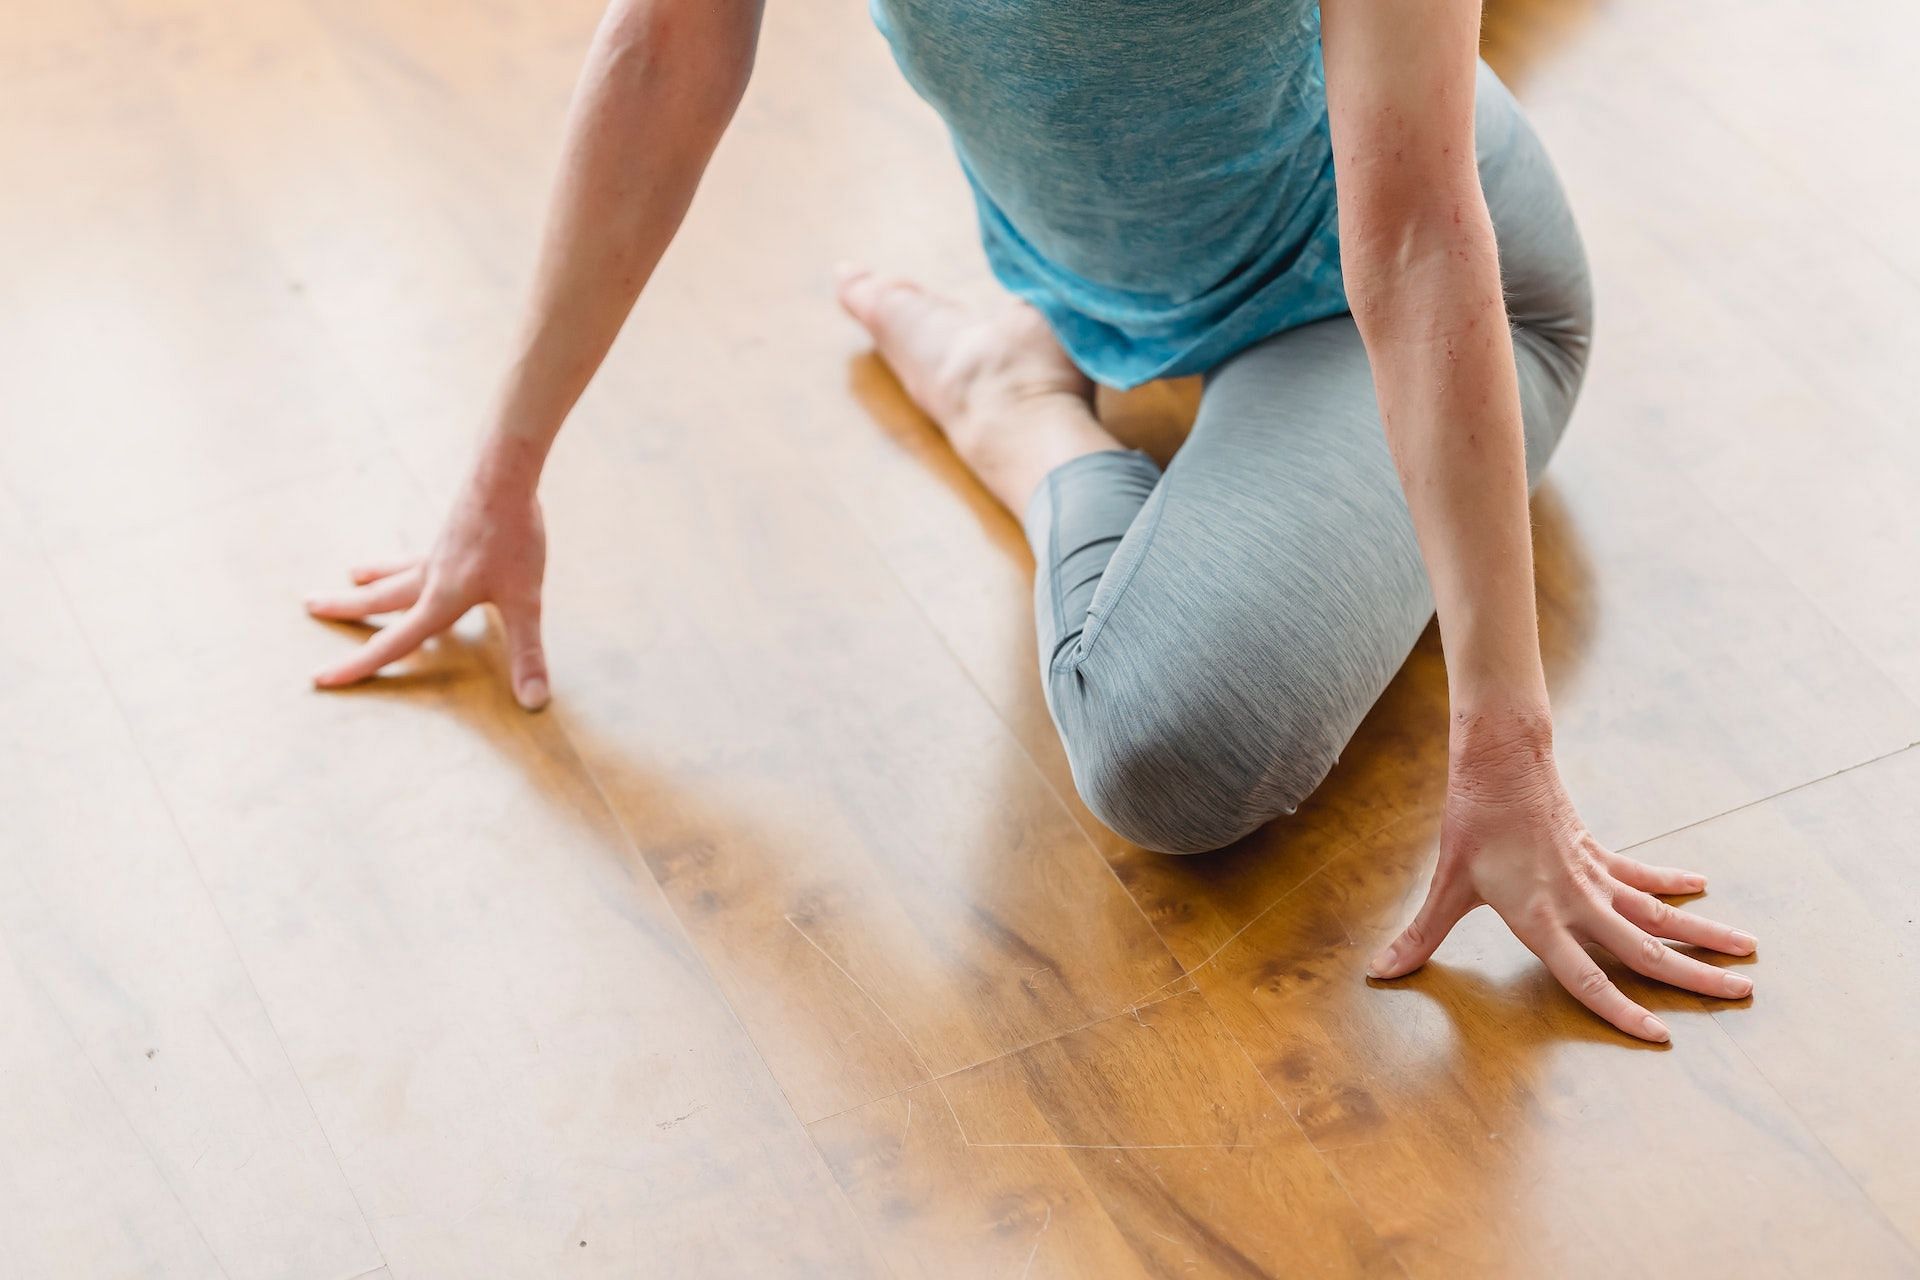 Yoga Exercise for Sciatica Pain | सेलिब्रिटी योगा ट्रेनर ने बताया साइटिका  के दर्द से कैसे पाएं छुटकारा, देखें वीडियो | TheHealthSite.com हिंदी